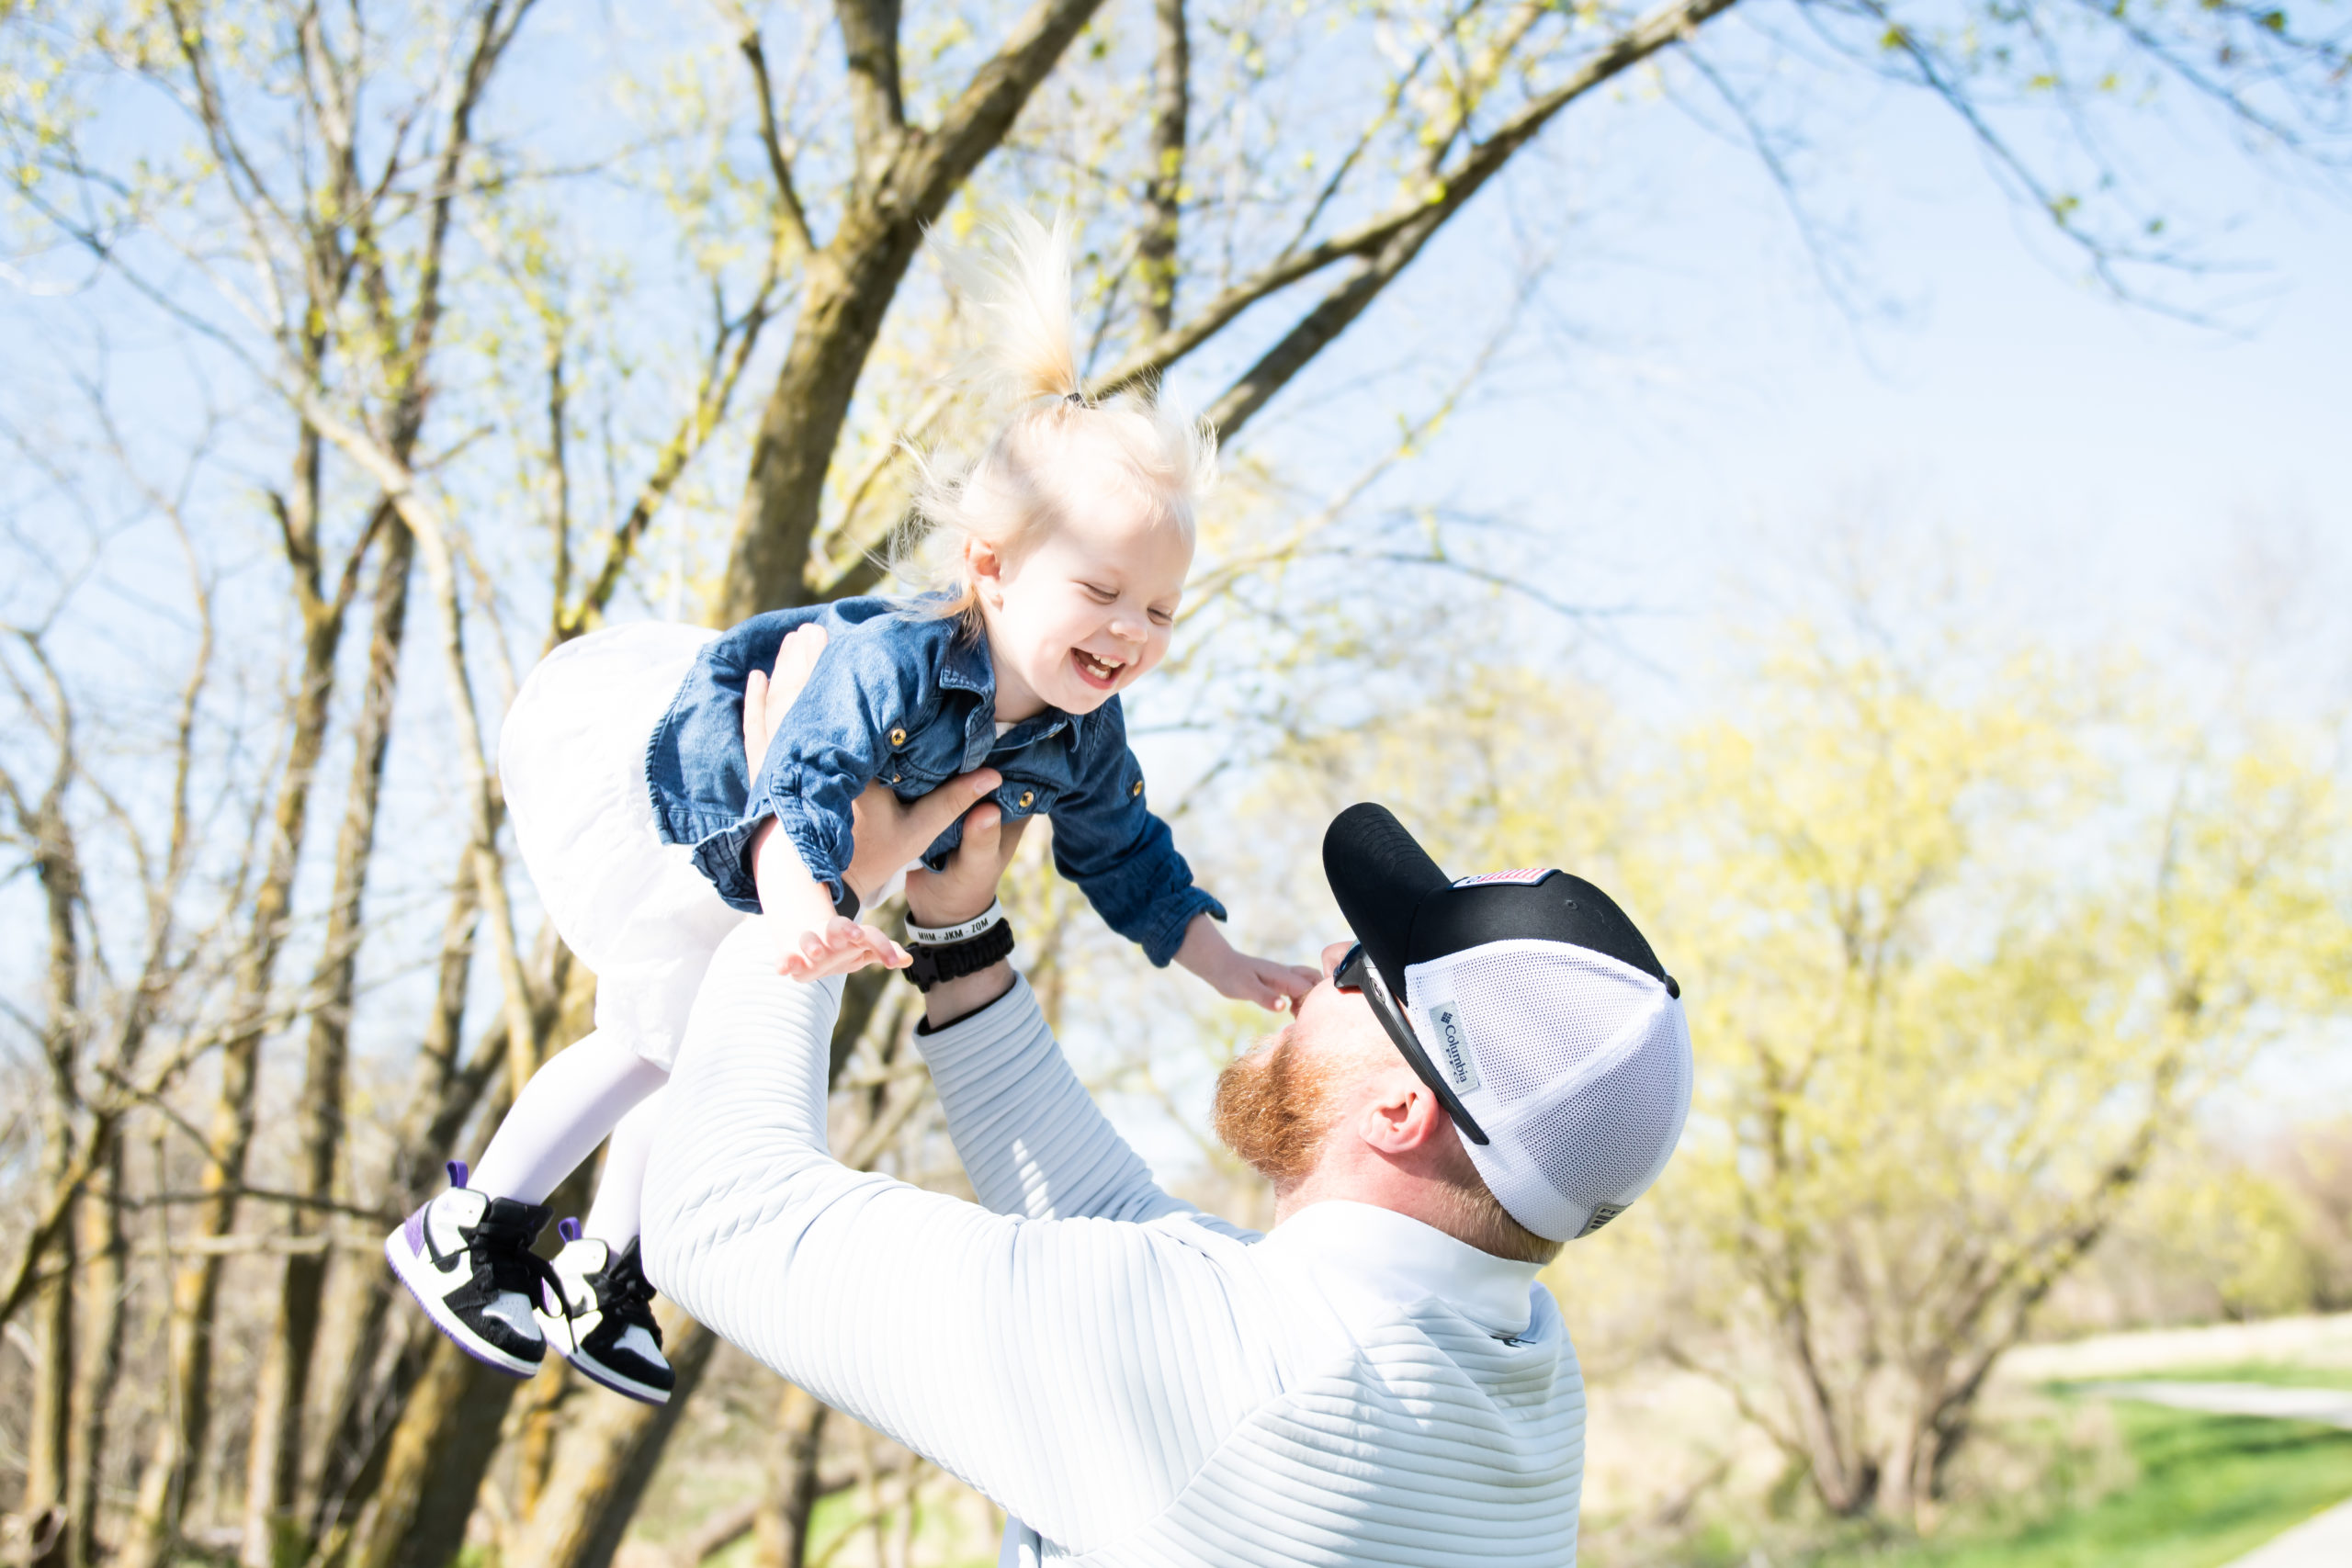 Dad throwing daughter in air at Nebraska park